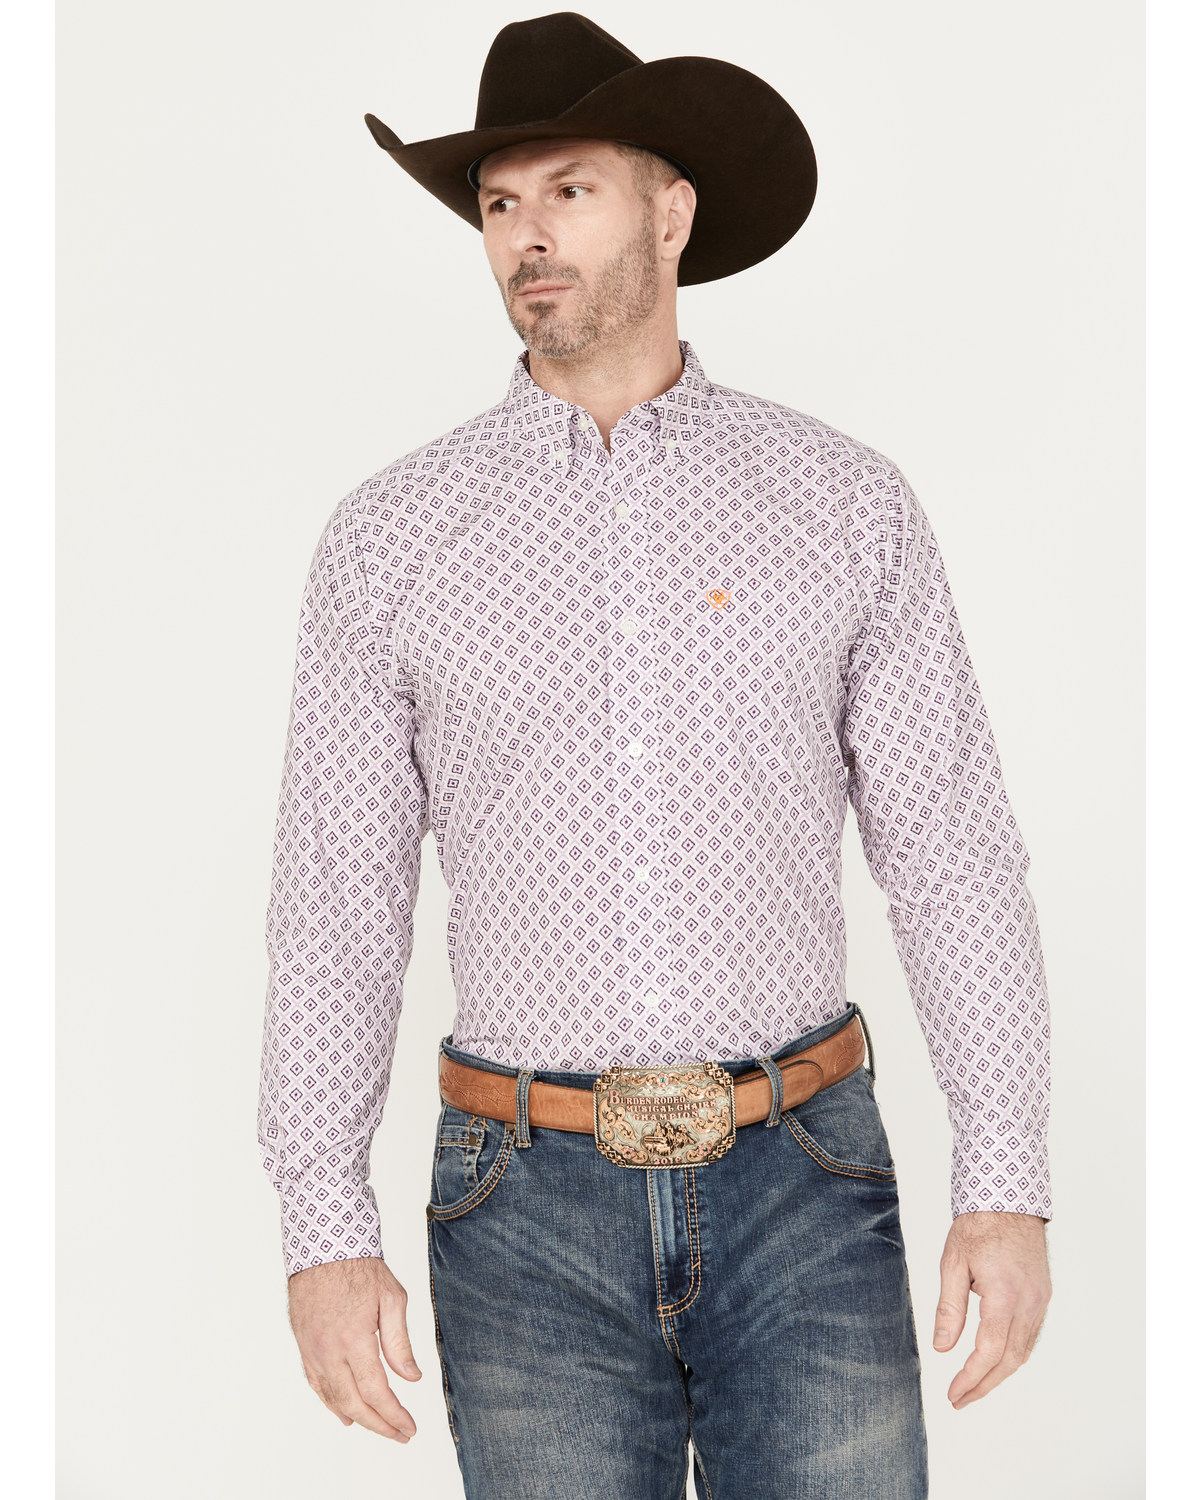 Ariat Men's Merrick Print Button Down Long Sleeve Western Shirt